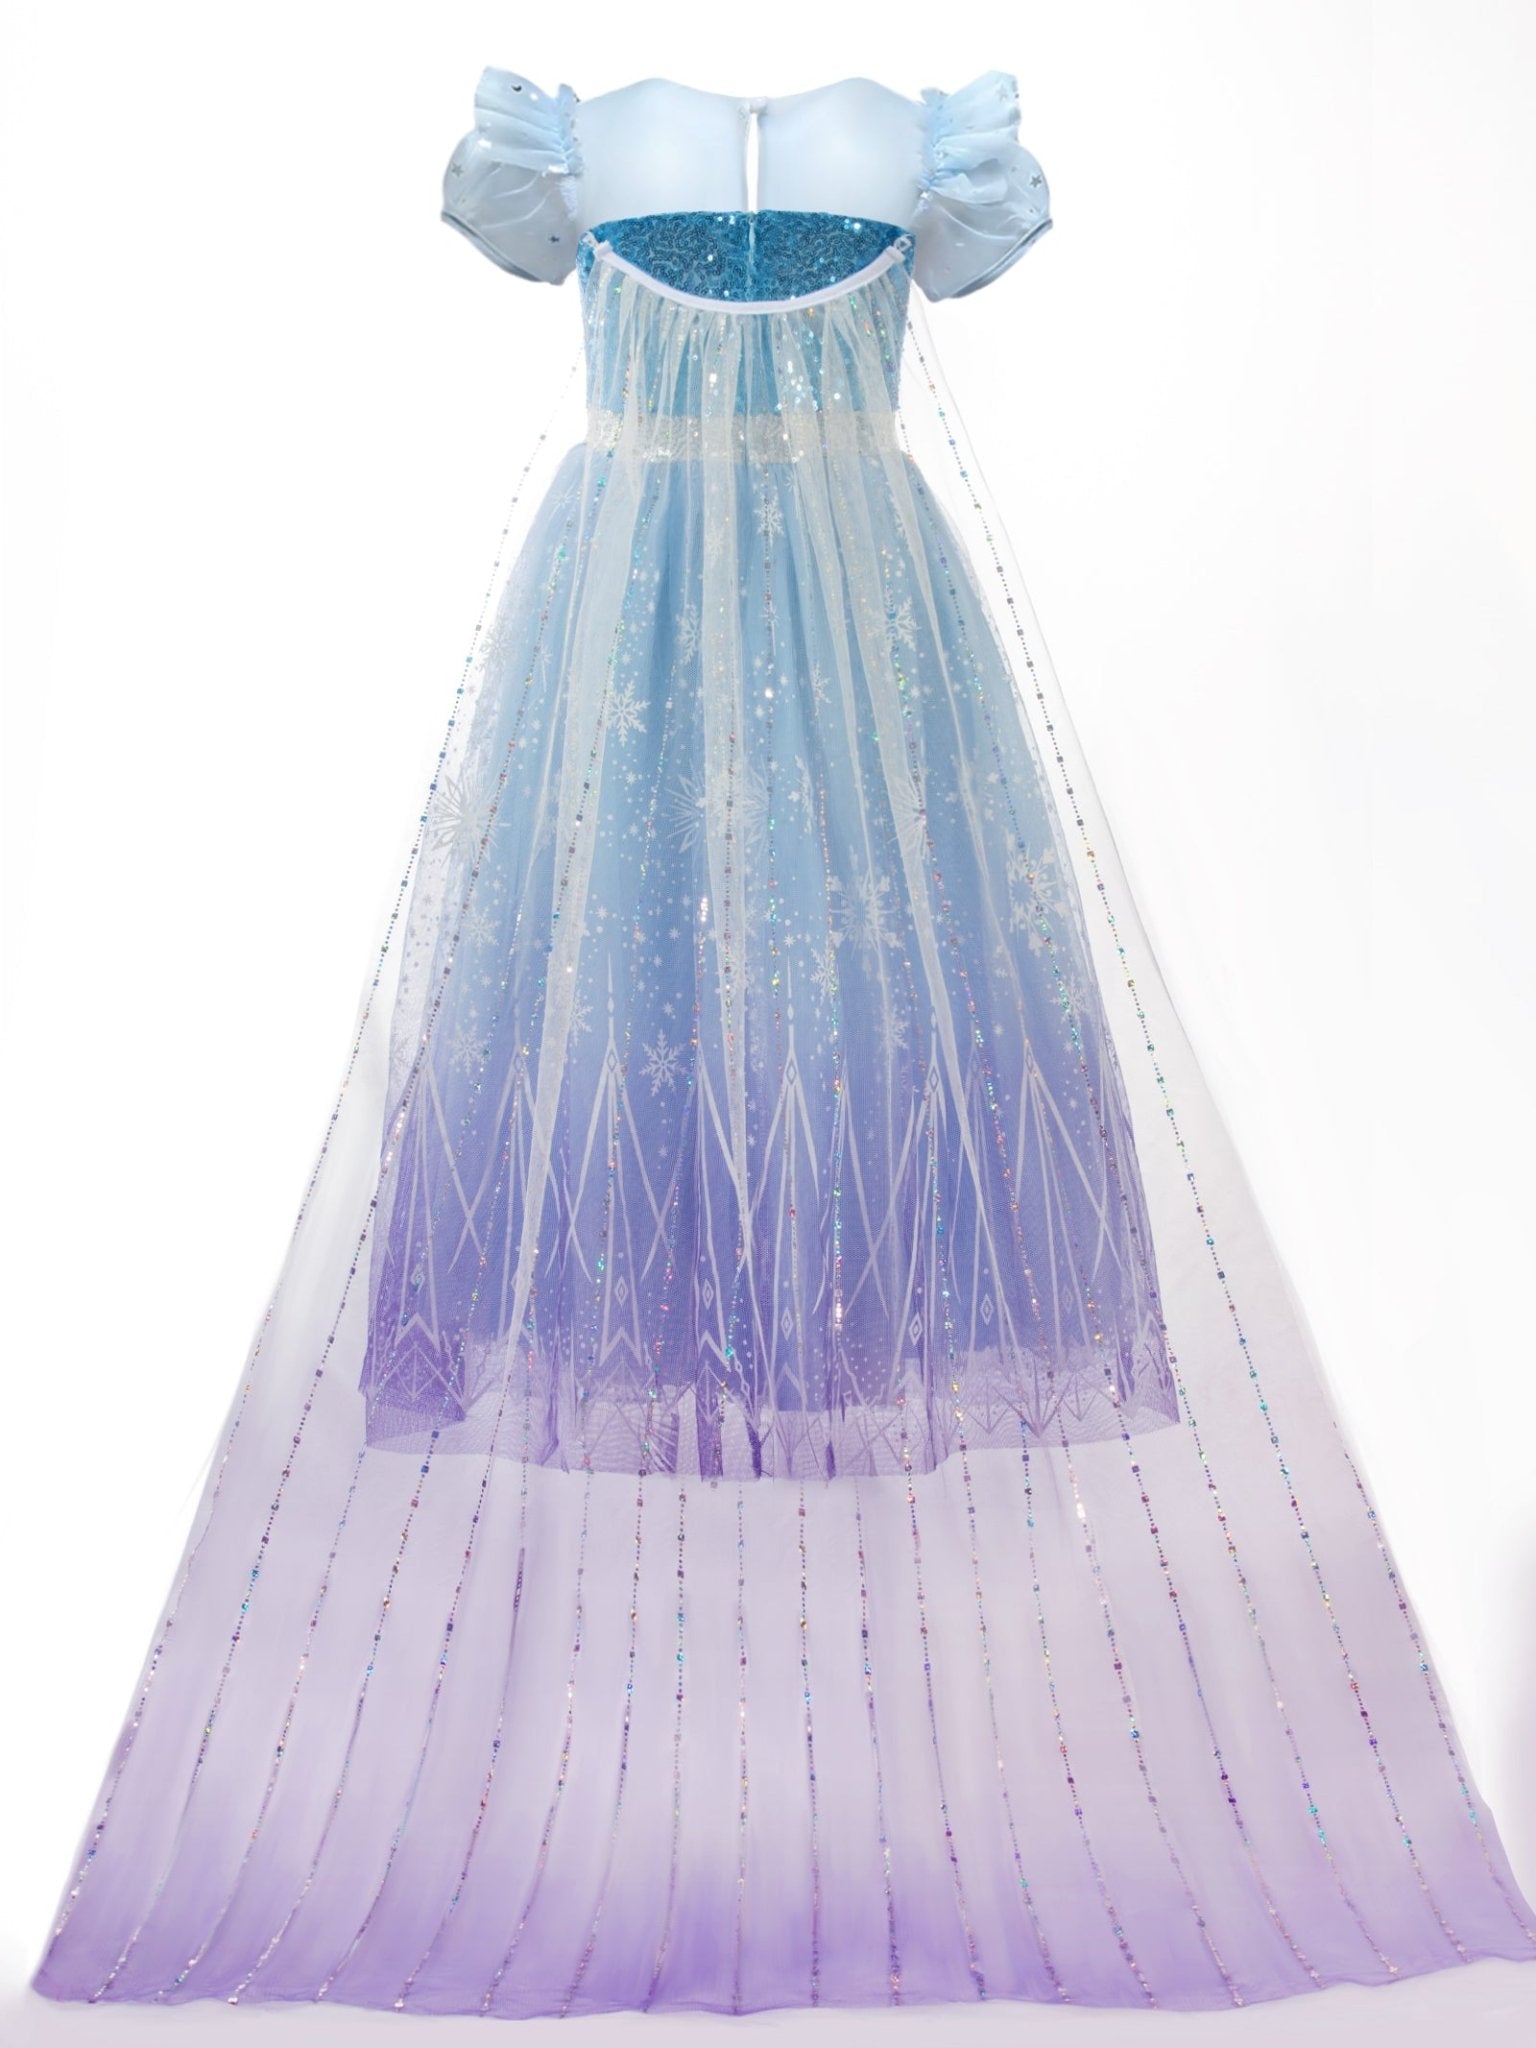 LED Snow Princess Costume For Girl - Uporpor